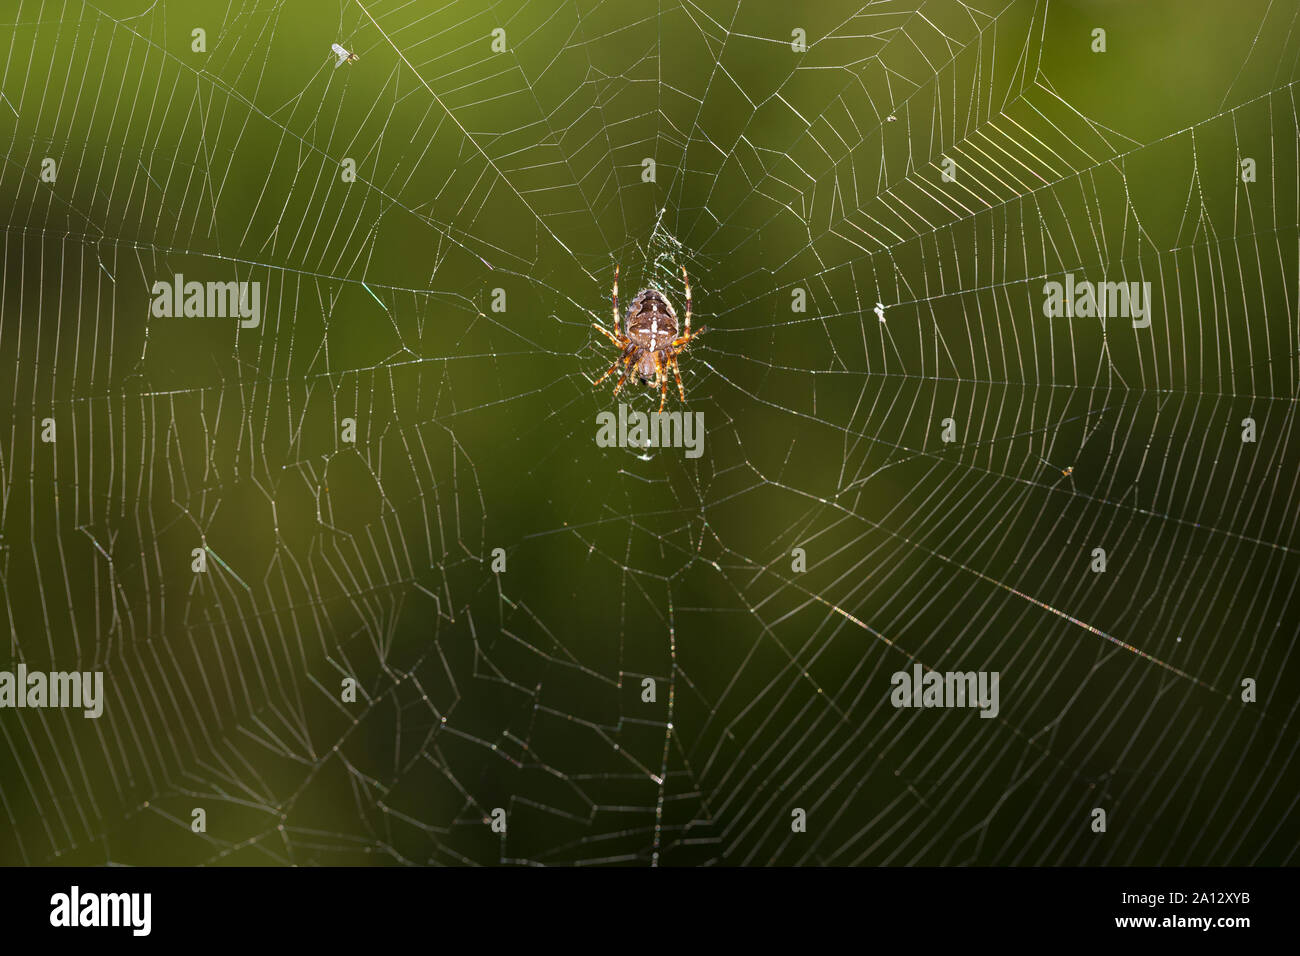 Garten-Kreuzspinne, Gartenkreuzspinne, Gemeine Kreuzspinne lauert in ihrem Netz, Radnetz, Araneus diadematus, cross orbweaver, European garden spider, Stock Photo